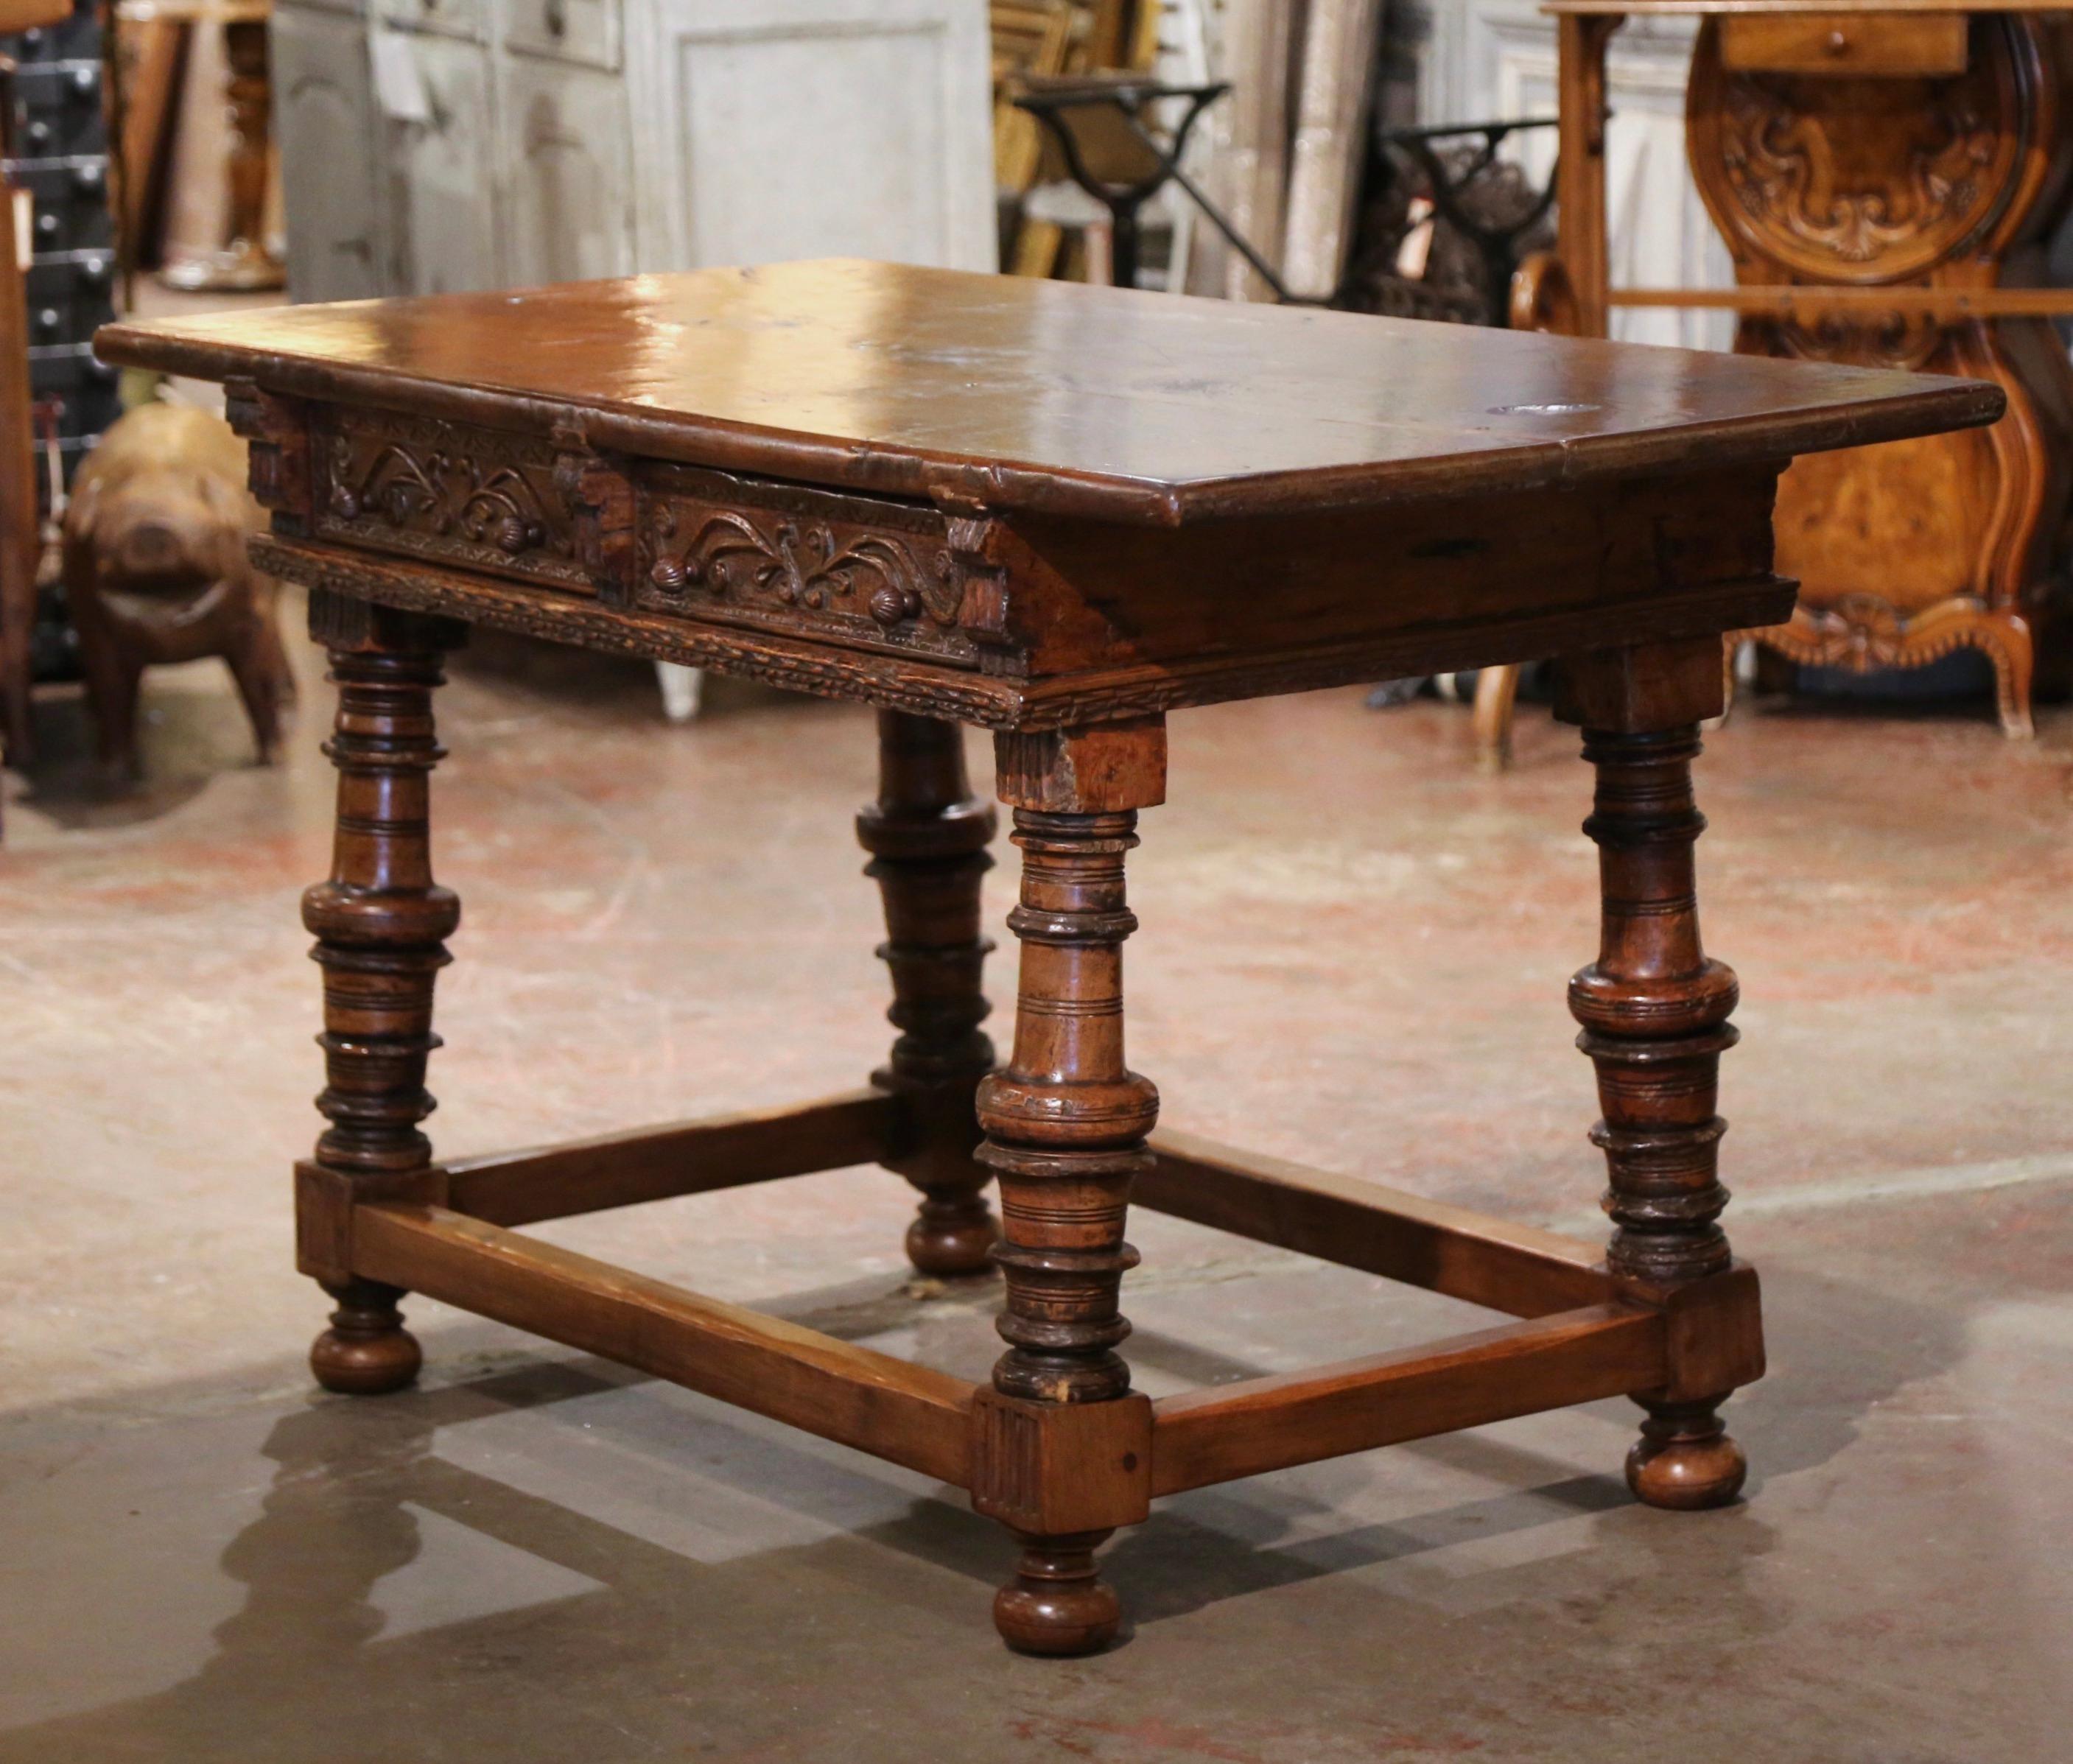 Fabriquée en Espagne vers 1760, cette table d'écriture antique repose sur d'épais pieds tournés et sculptés, terminés par des pieds en forme de chignon, et agrémentés d'un élégant châssis rectangulaire à la base. La table haute comporte deux tiroirs